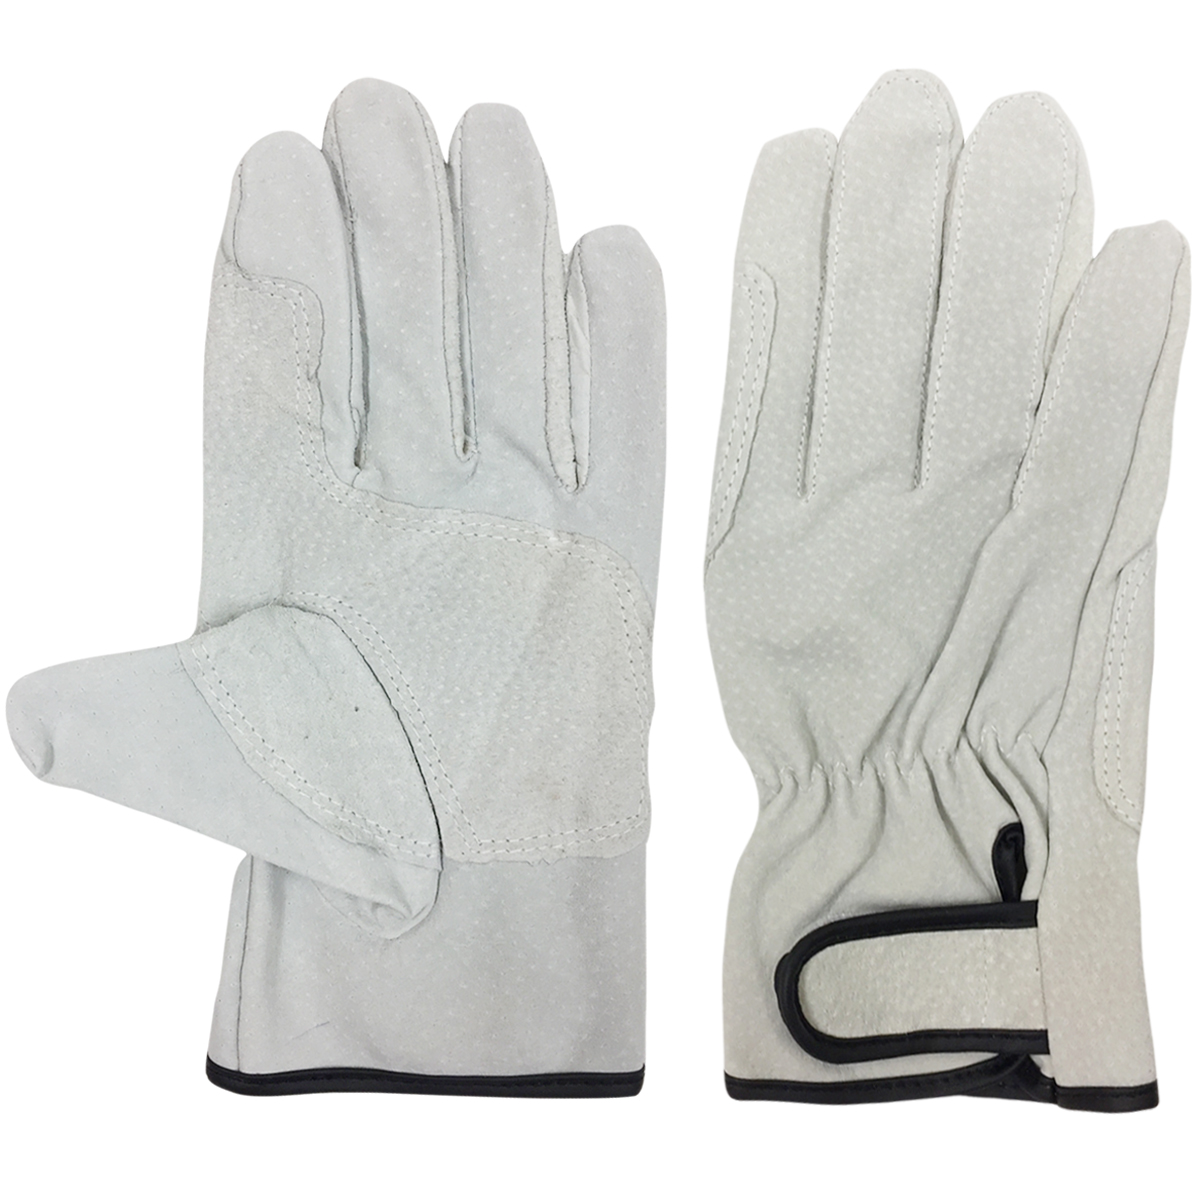 EX 床皮マジック3双組3−330 M ワークサポート 保護具 手袋 革